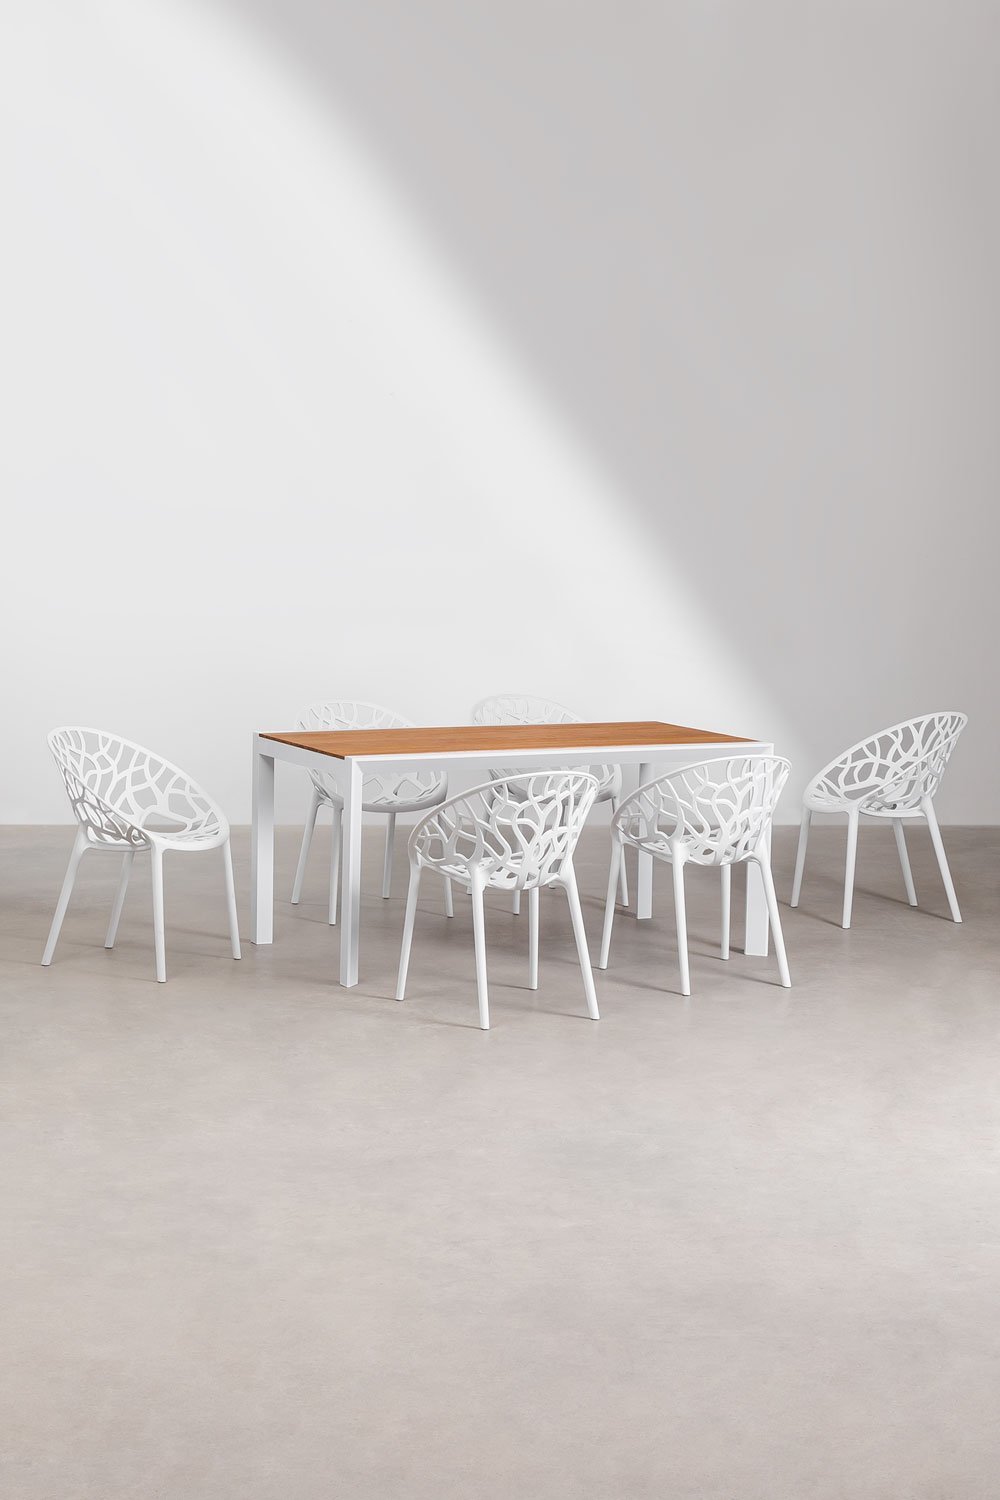 Set de Table Rectangulaire en Bois et Aluminium (160x90 cm) Archer Supreme et 6 Chaises de Jardin Empilables Ores, image de la galerie 1